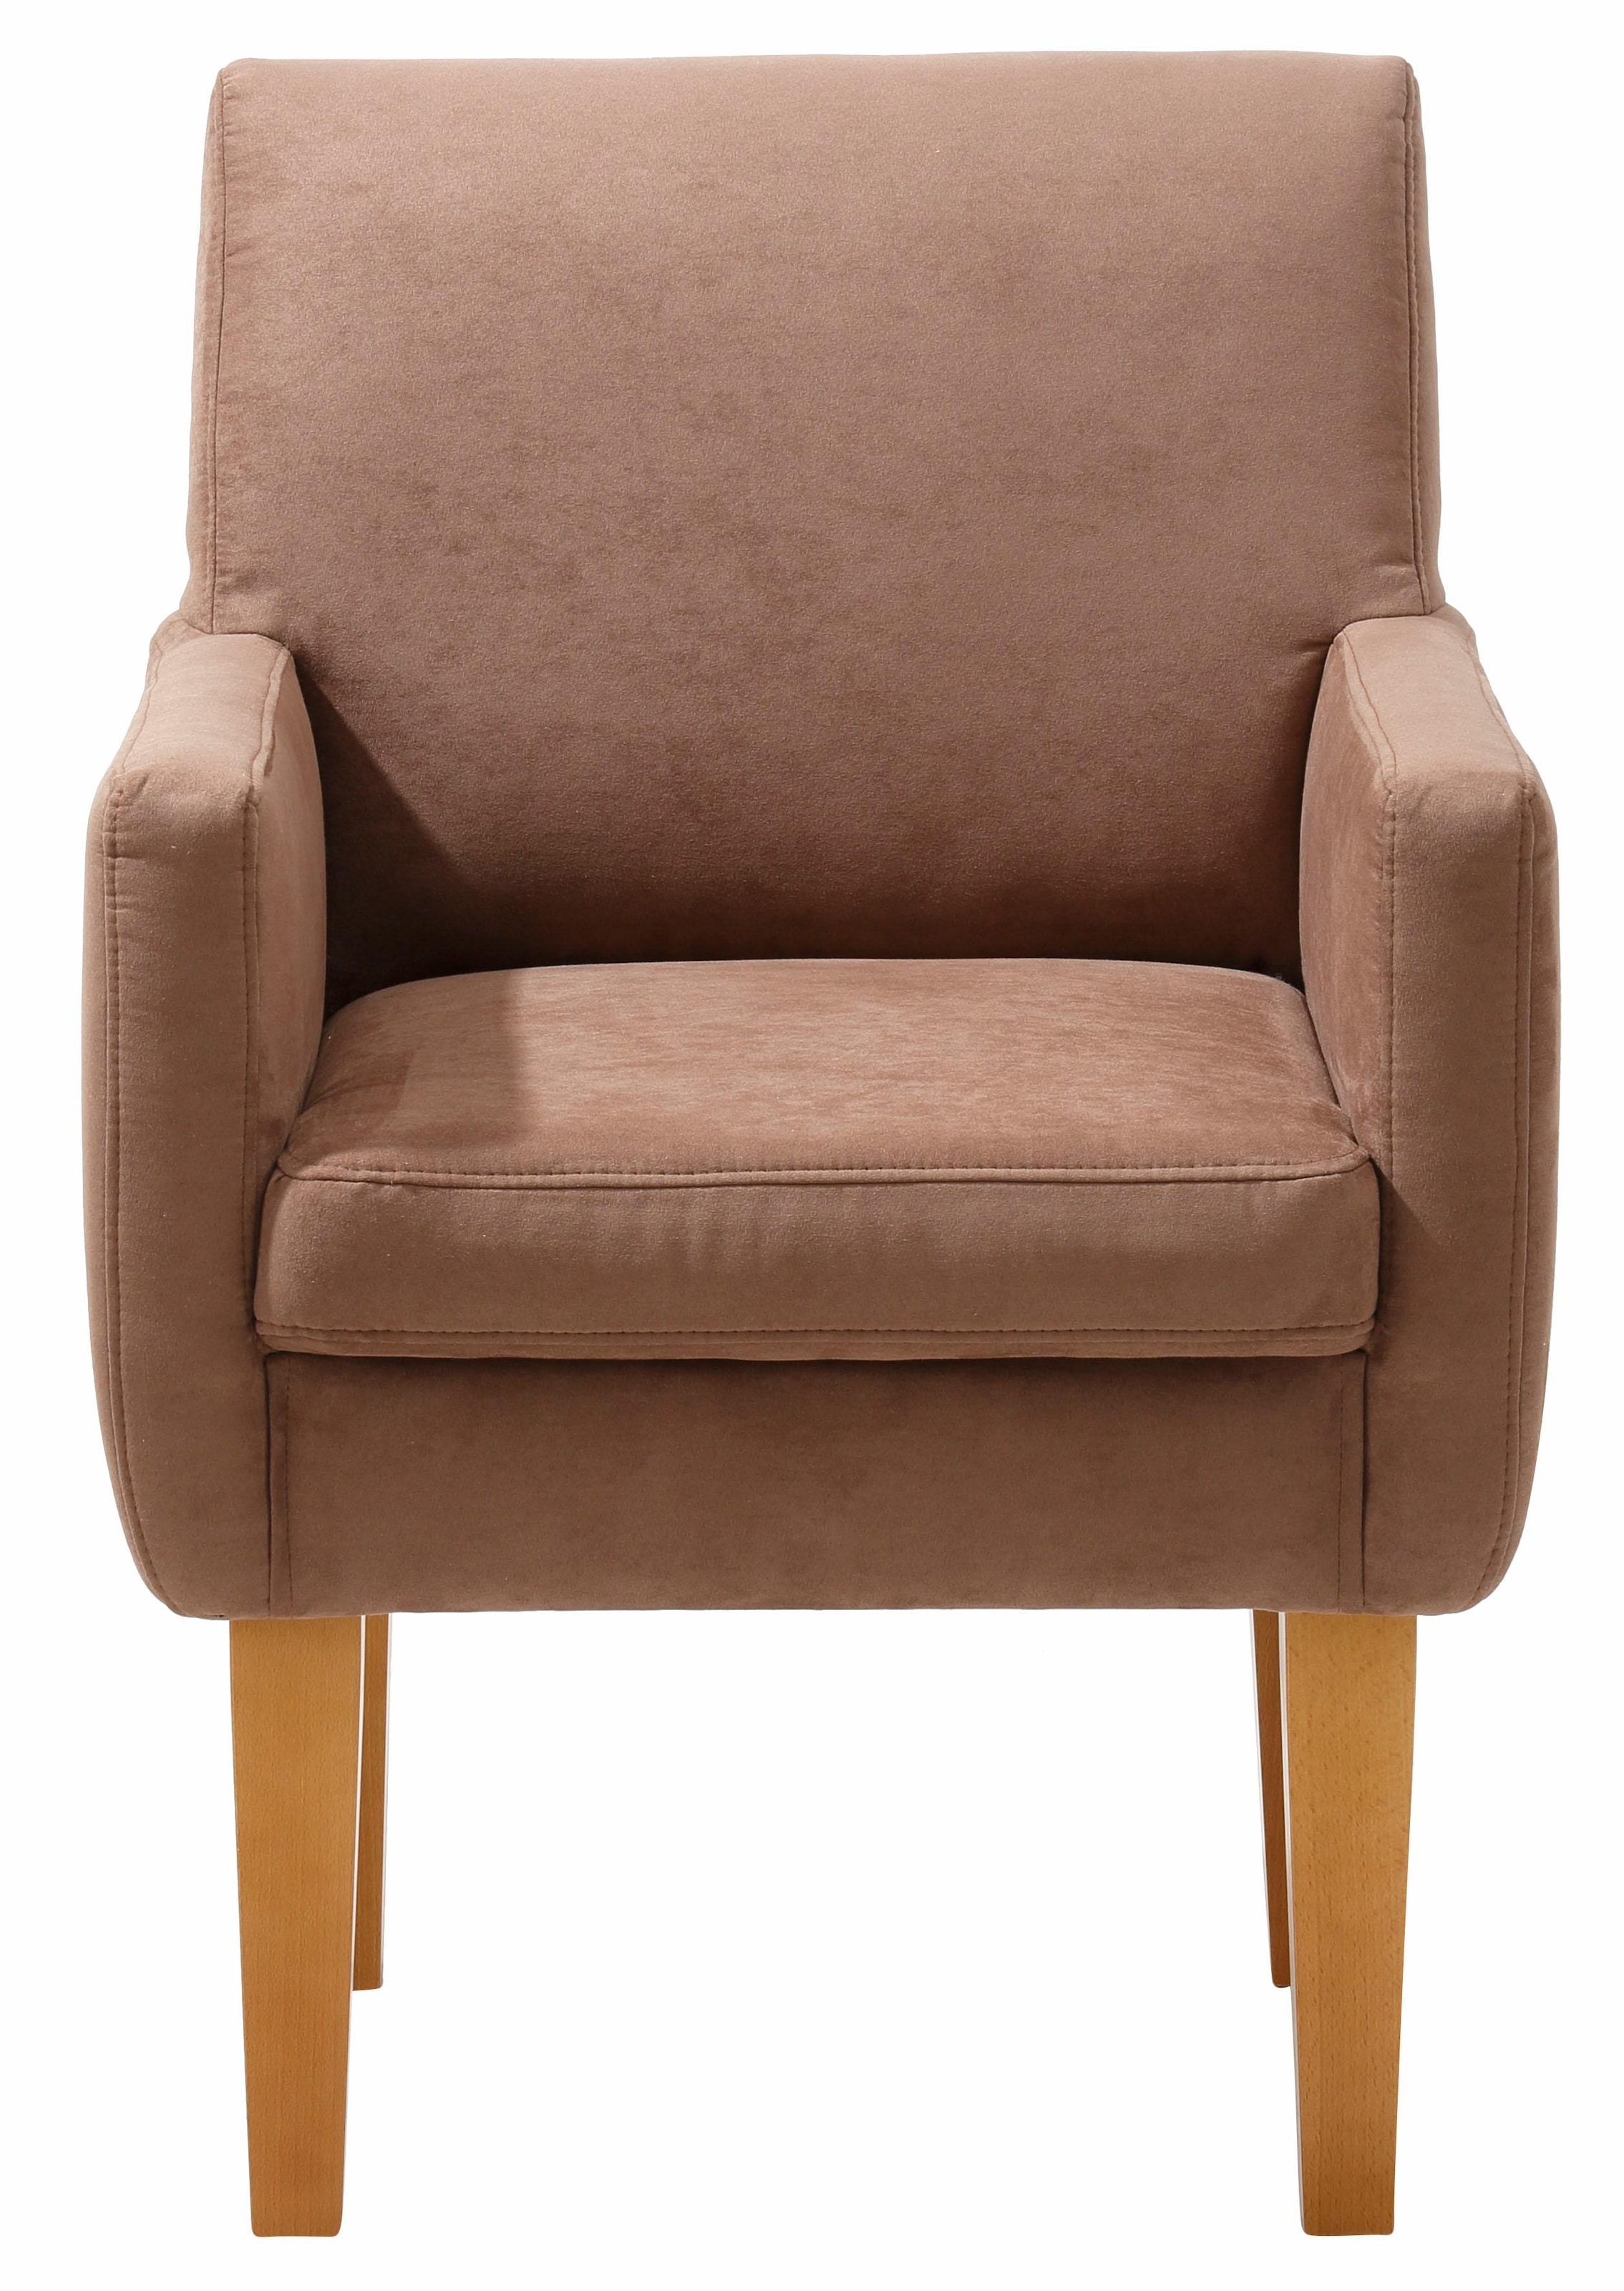 Sessel »Fehmarn«, komfortable Sitzhöhe von 54 cm, in 3 verschiedenen Bezugsqualitäten